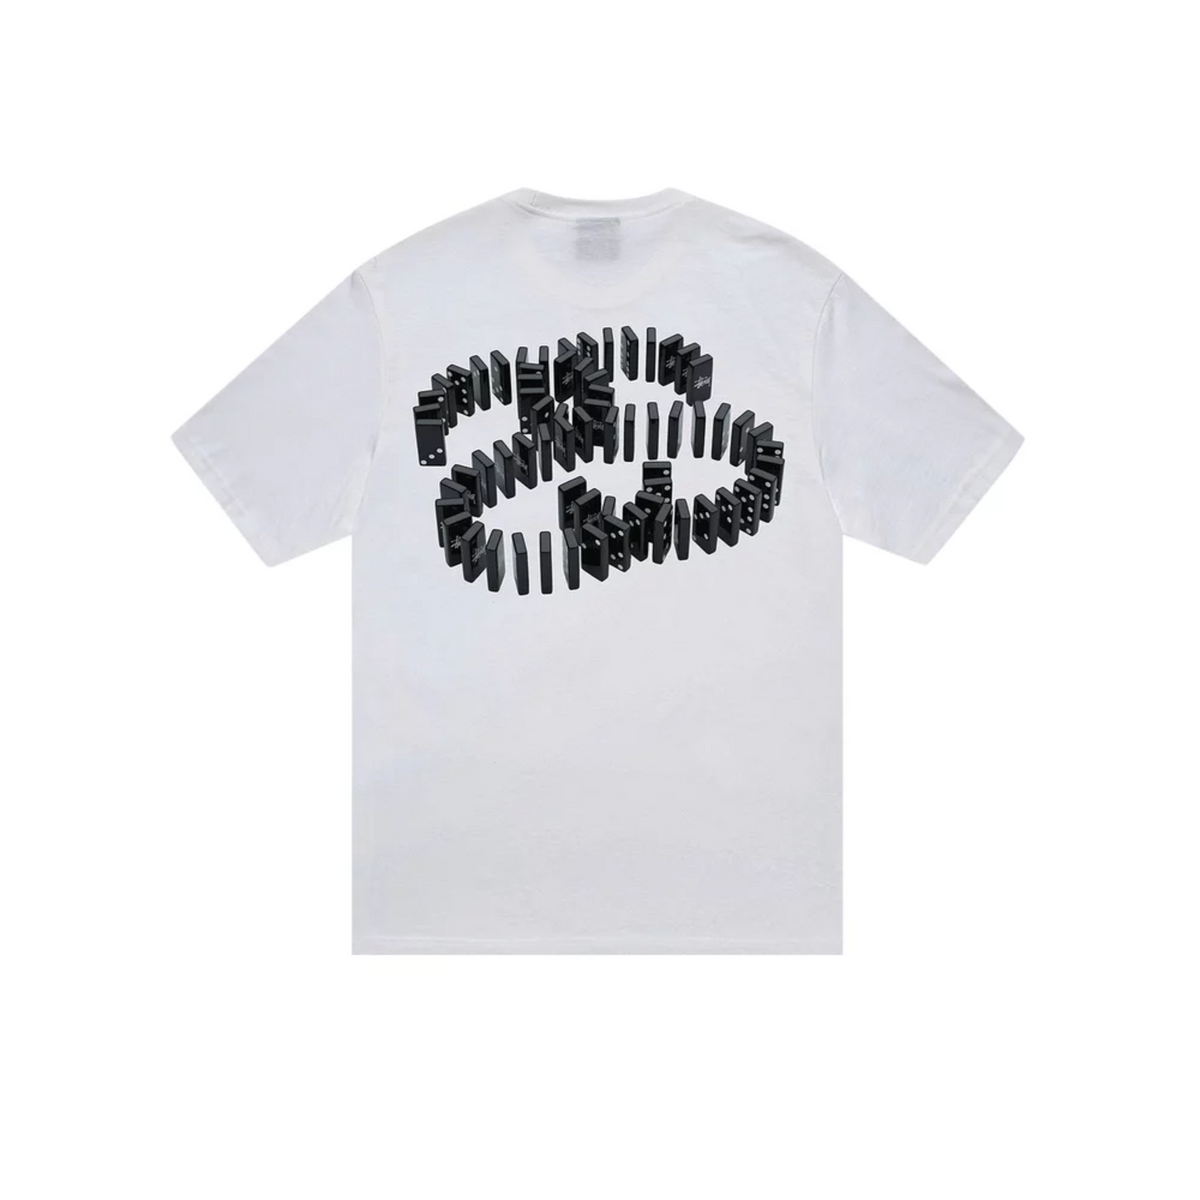 Stüssy Dominoes T-shirt "White"